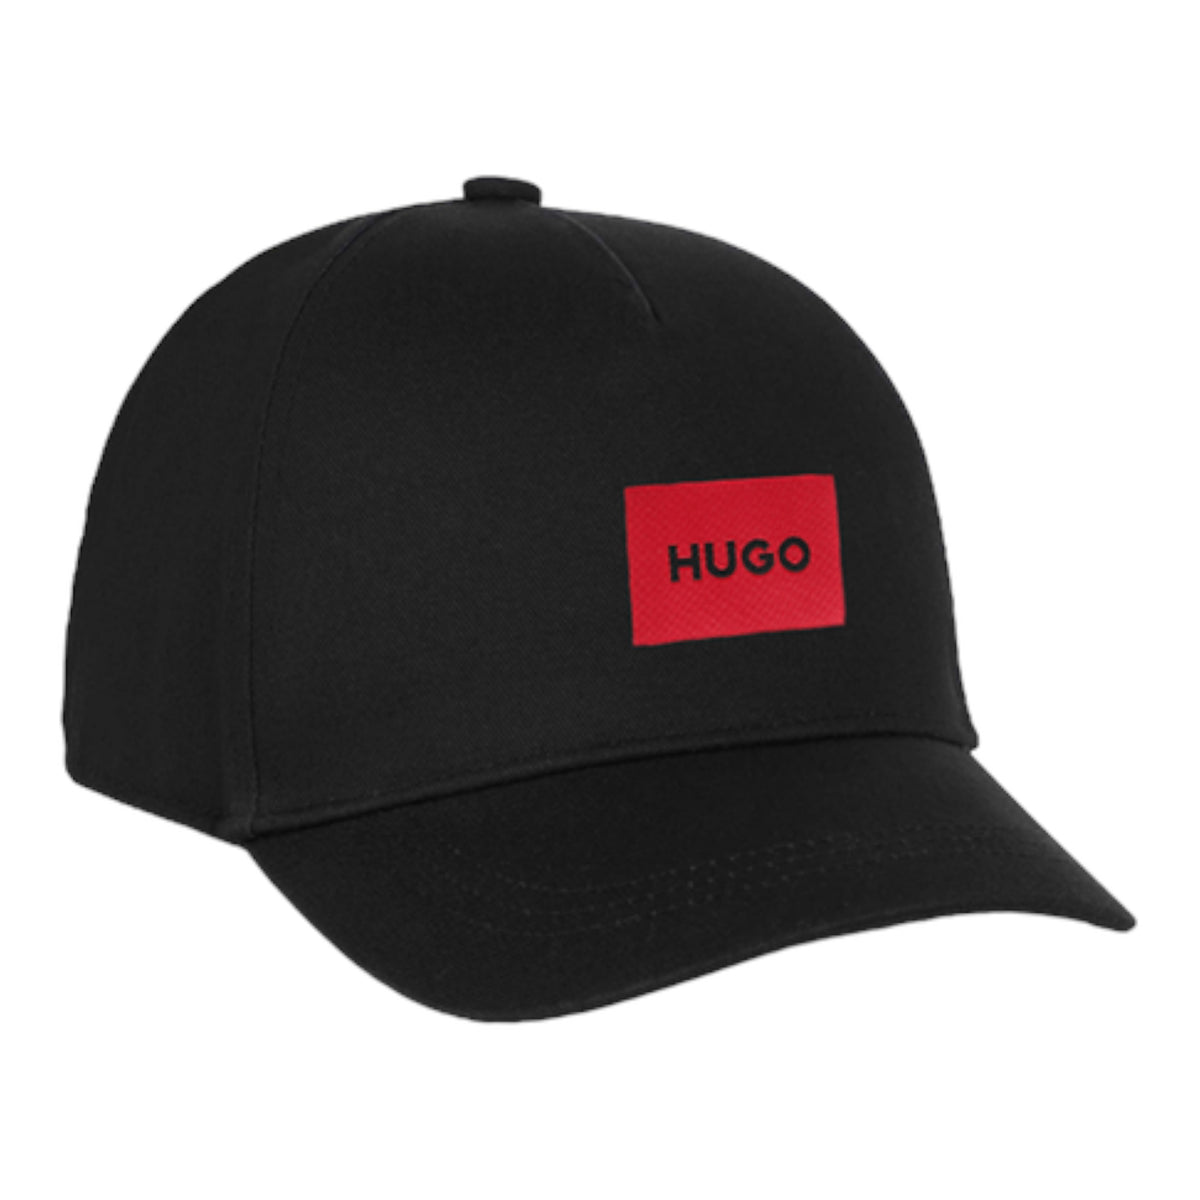 Hugo by Hugo Boss Kids Baseball Cap